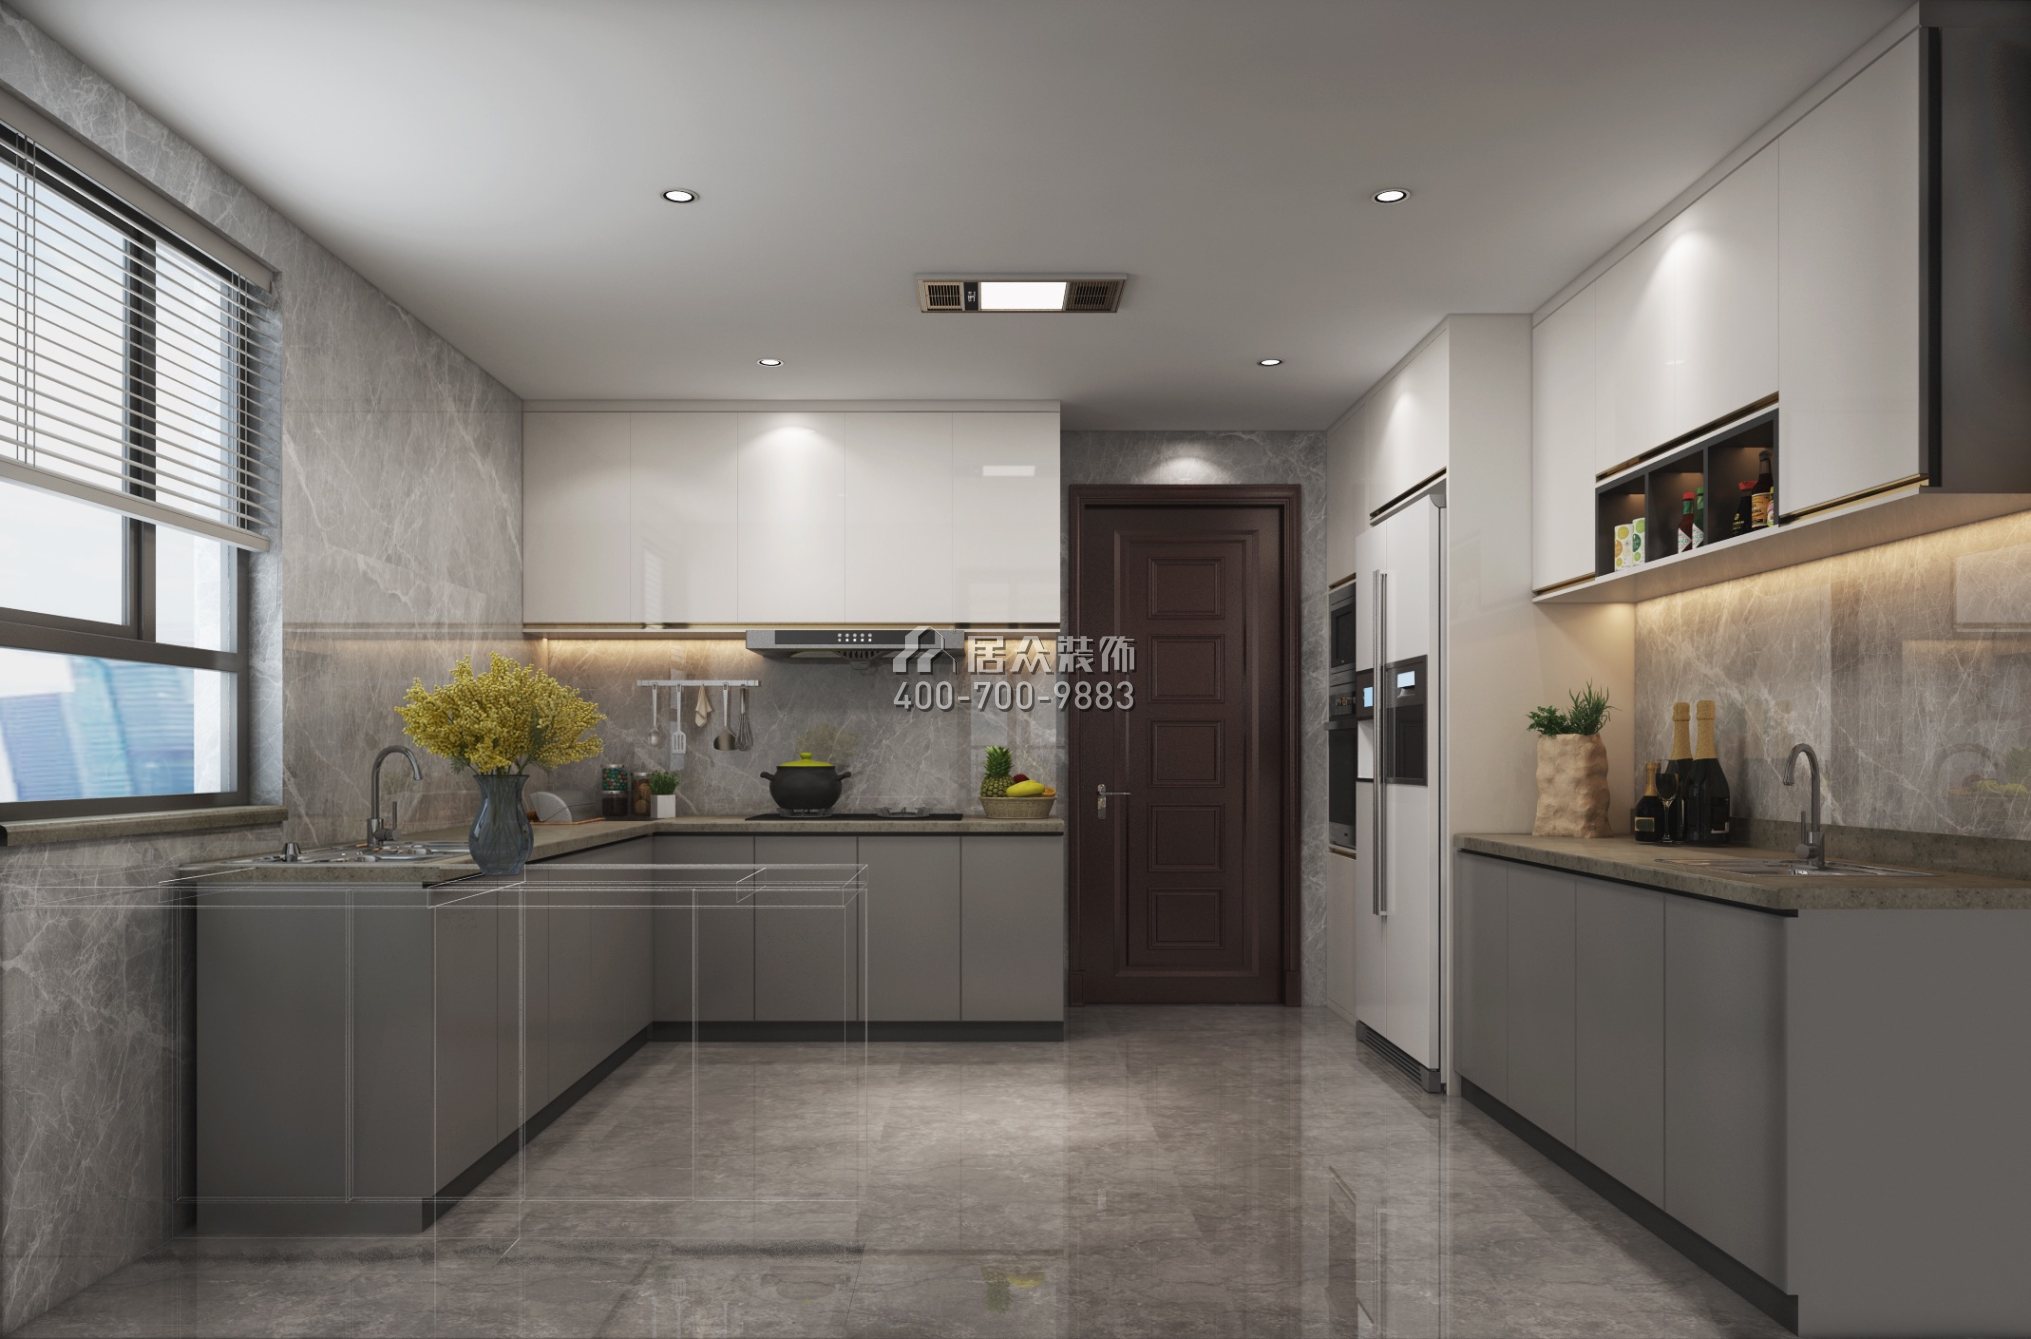 水灣壹玖柒玖廣場一期169平方米現代簡約風格平層戶型廚房裝修效果圖